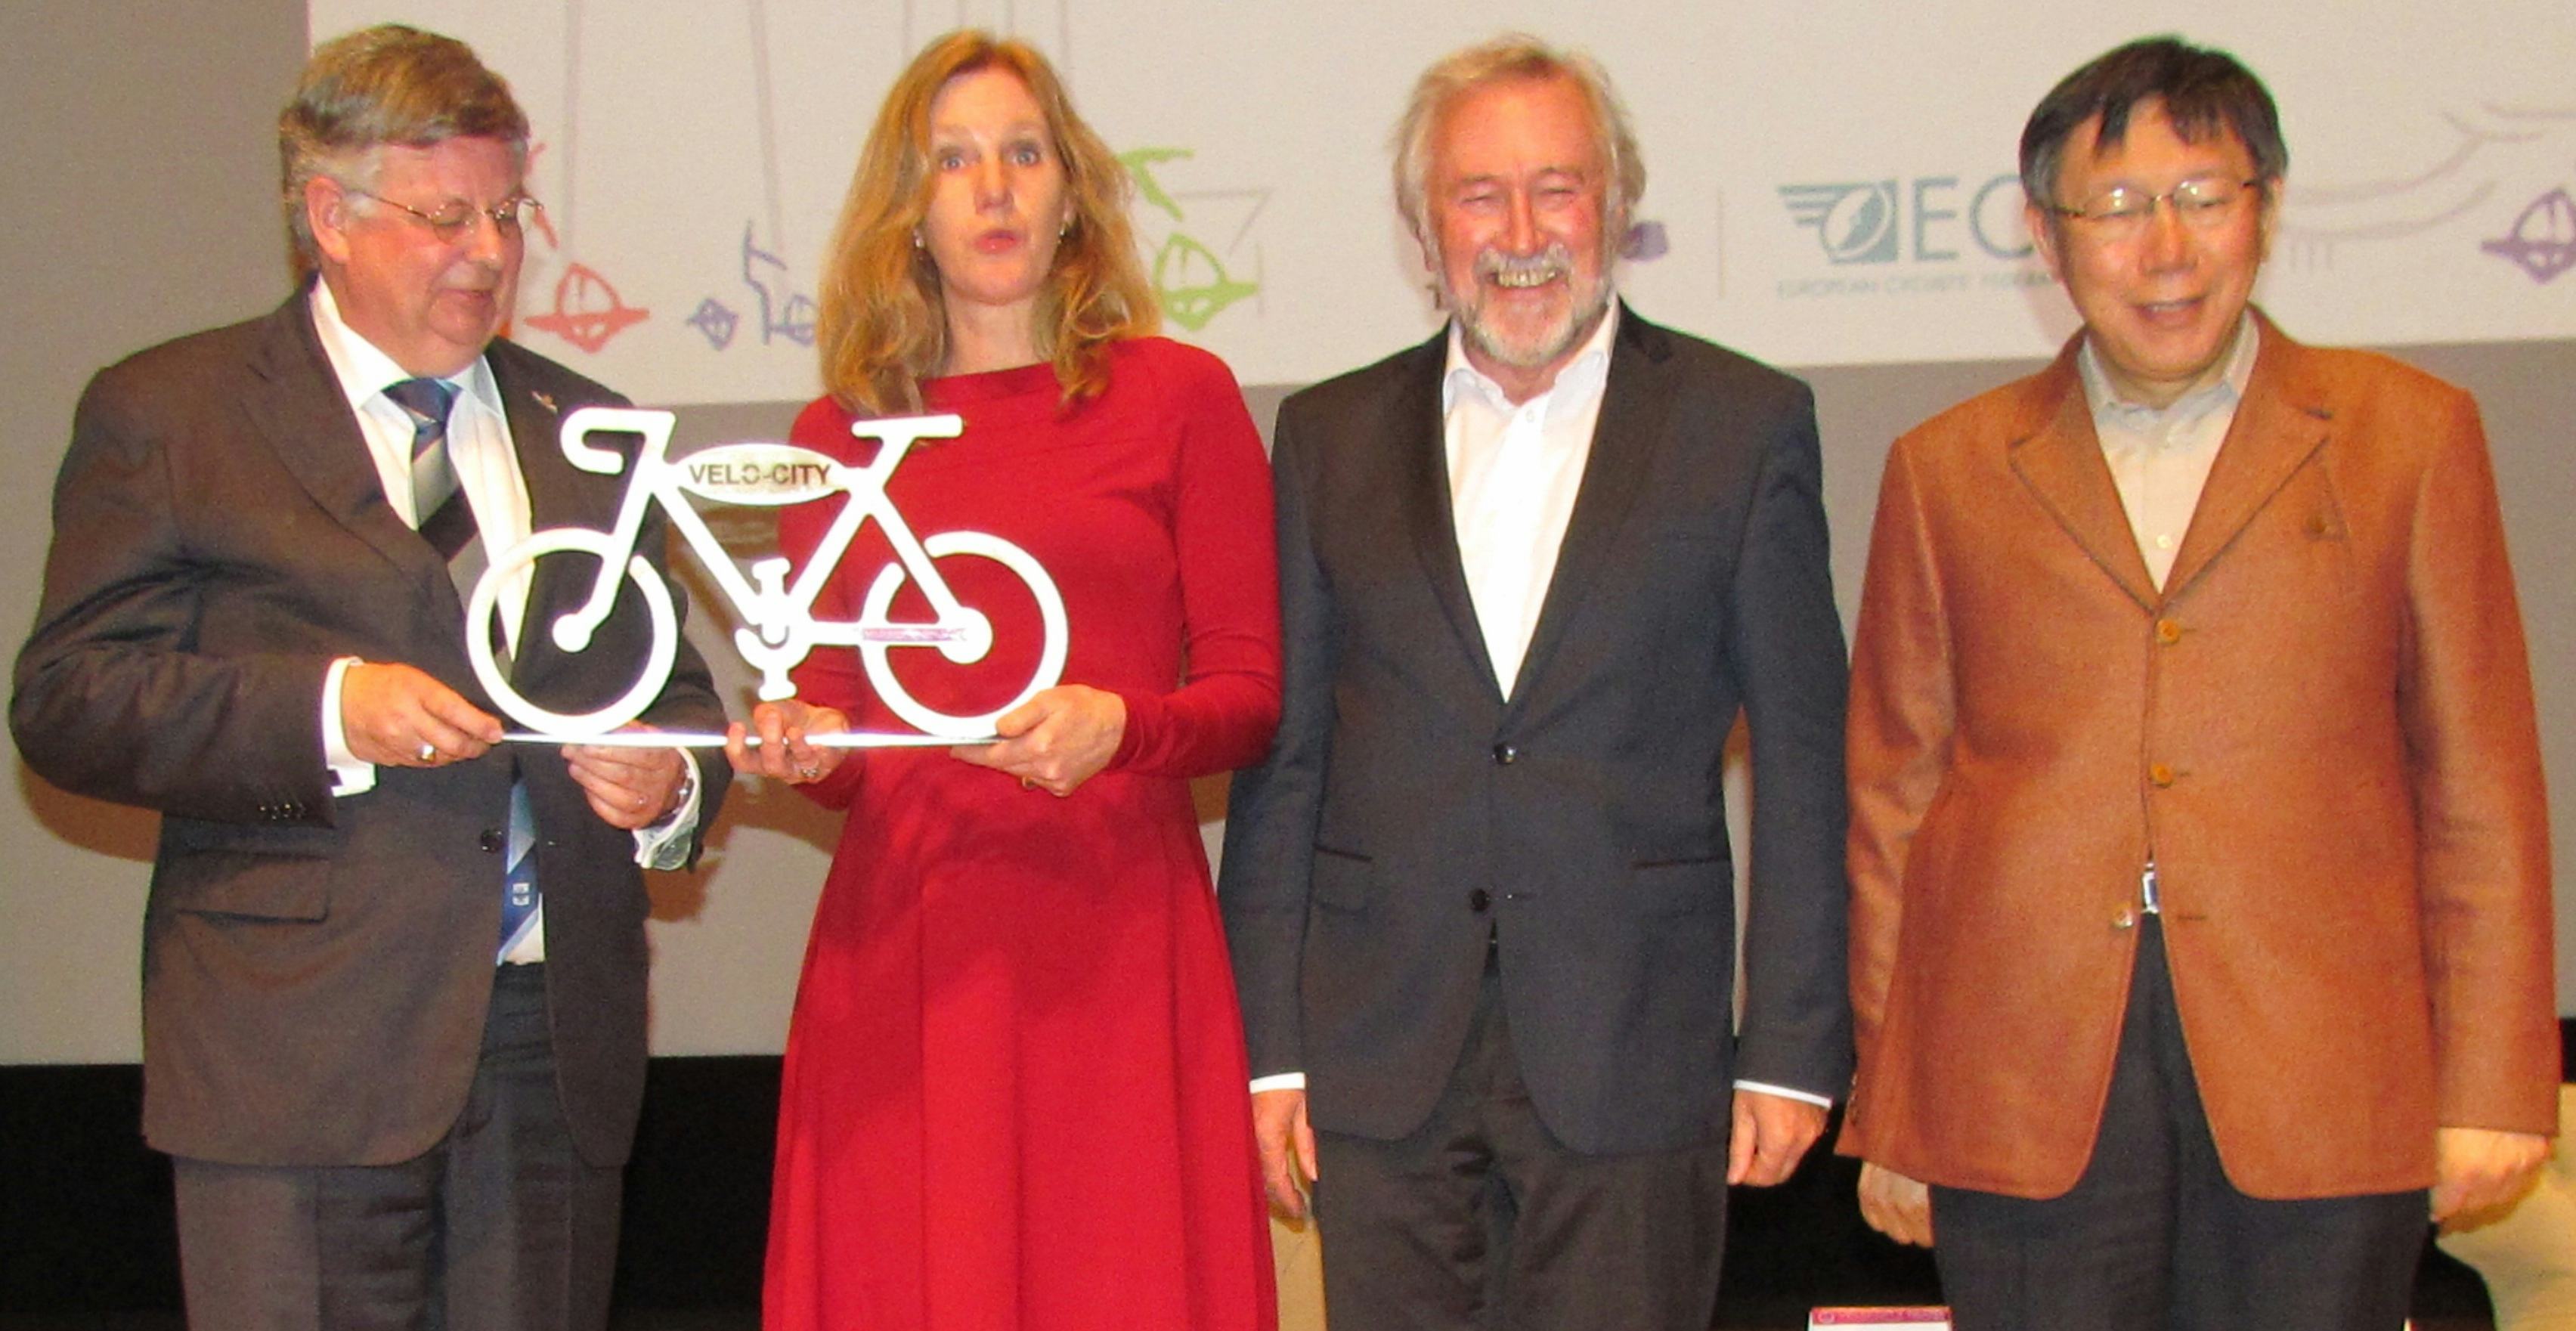 2017年自行車全球城市大會由荷蘭阿納姆市和奈梅亨市聯合主辦。荷蘭阿納姆市市長Herman Kaiser(左)與奈梅亨市副市長Harriet Tiements由ECF主席Manfred Neun和台北市長柯文哲手中接下了自行車全球城市大會的精神象徵。-Photo Bike Europe